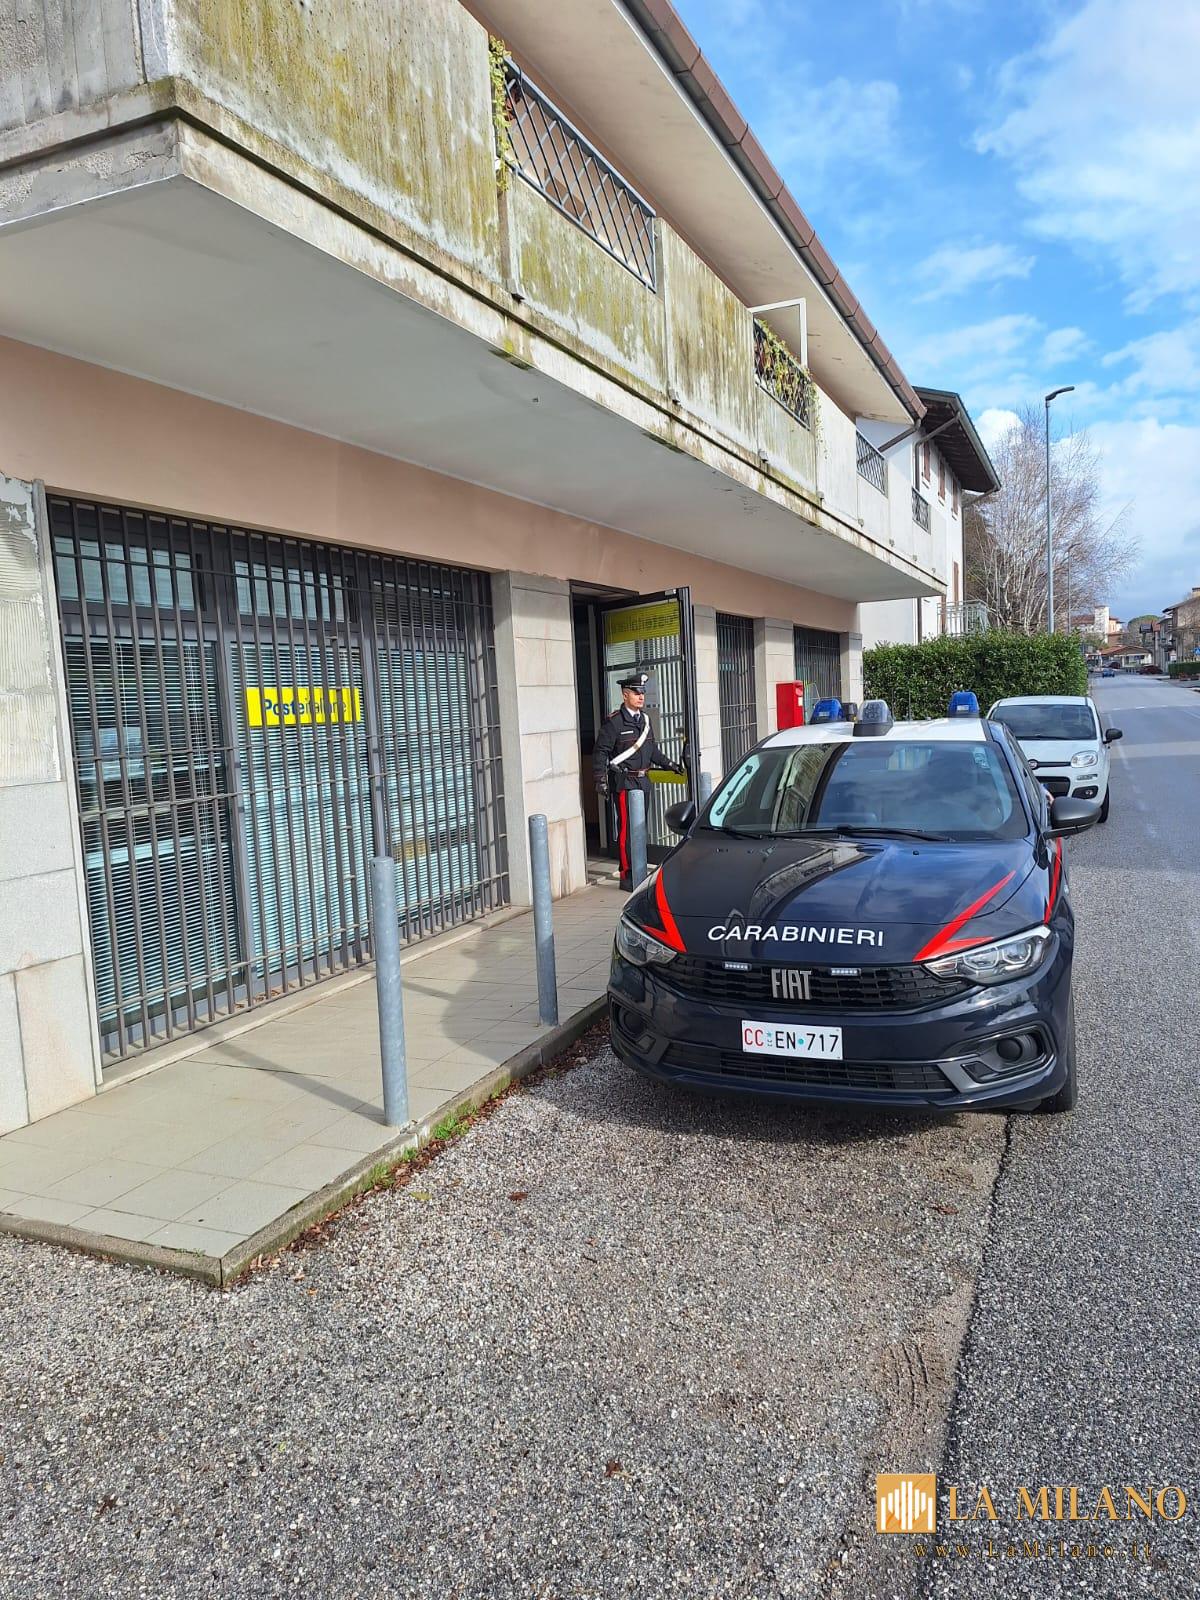 Udine: i Carabinieri hanno identificato i presunti autori di una tentata rapina in un Ufficio Postale.